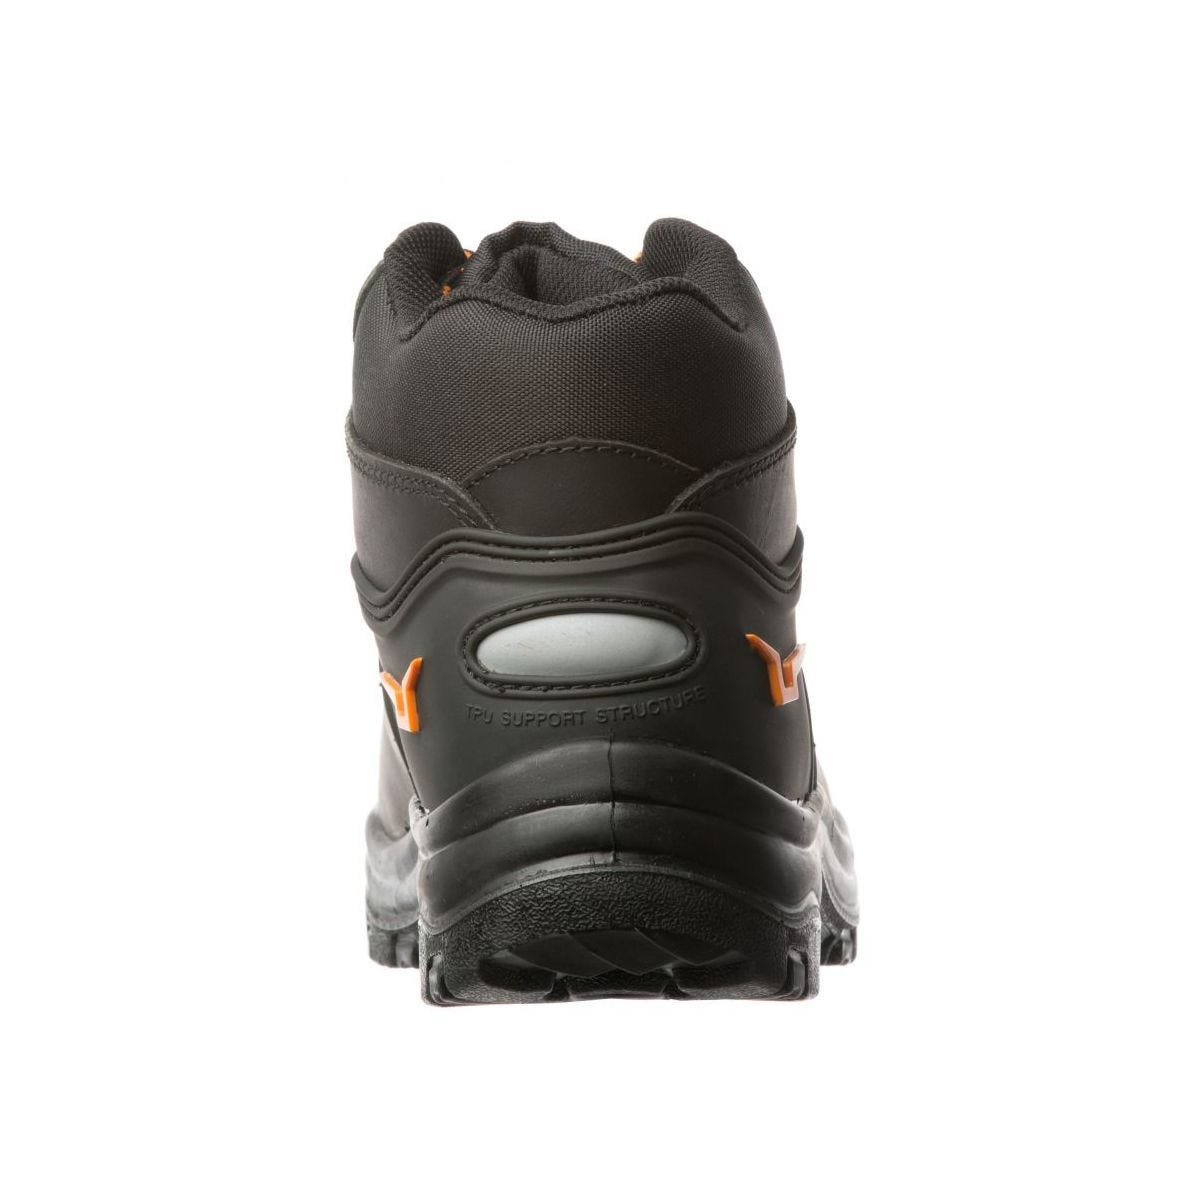 Chaussures de sécurité hautes S3 SRC OPAL composite Noir - Coverguard - Taille 41 3